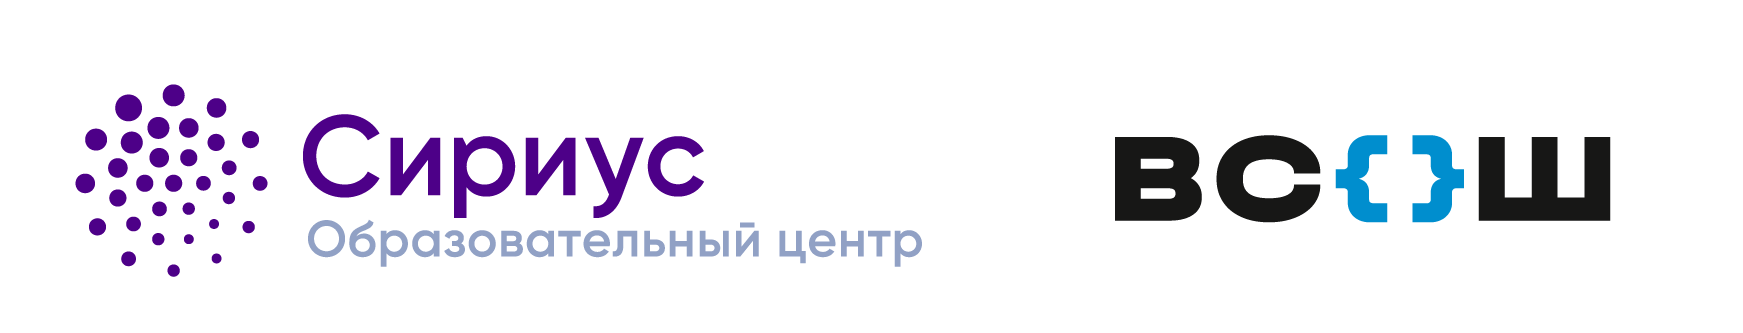 логотип всош сириус 2